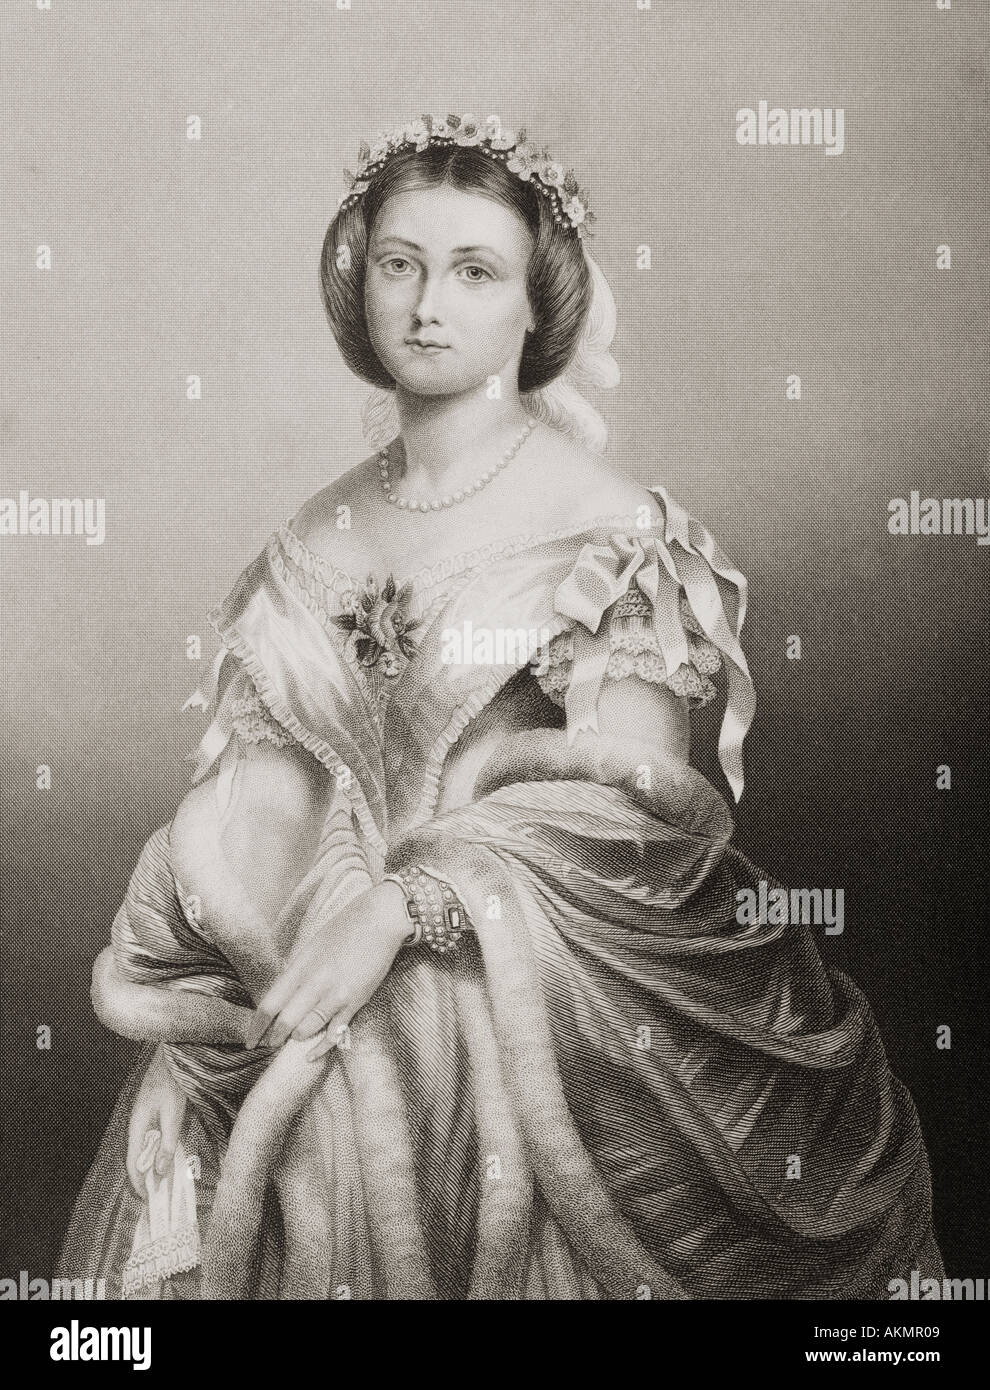 Victoria Adelaide Maria Louisa, Victoria Princess Royal, 1840 - 1901. Il tedesco imperatrice, regina di Prussia dal matrimonio di imperatore tedesco Federico III Foto Stock